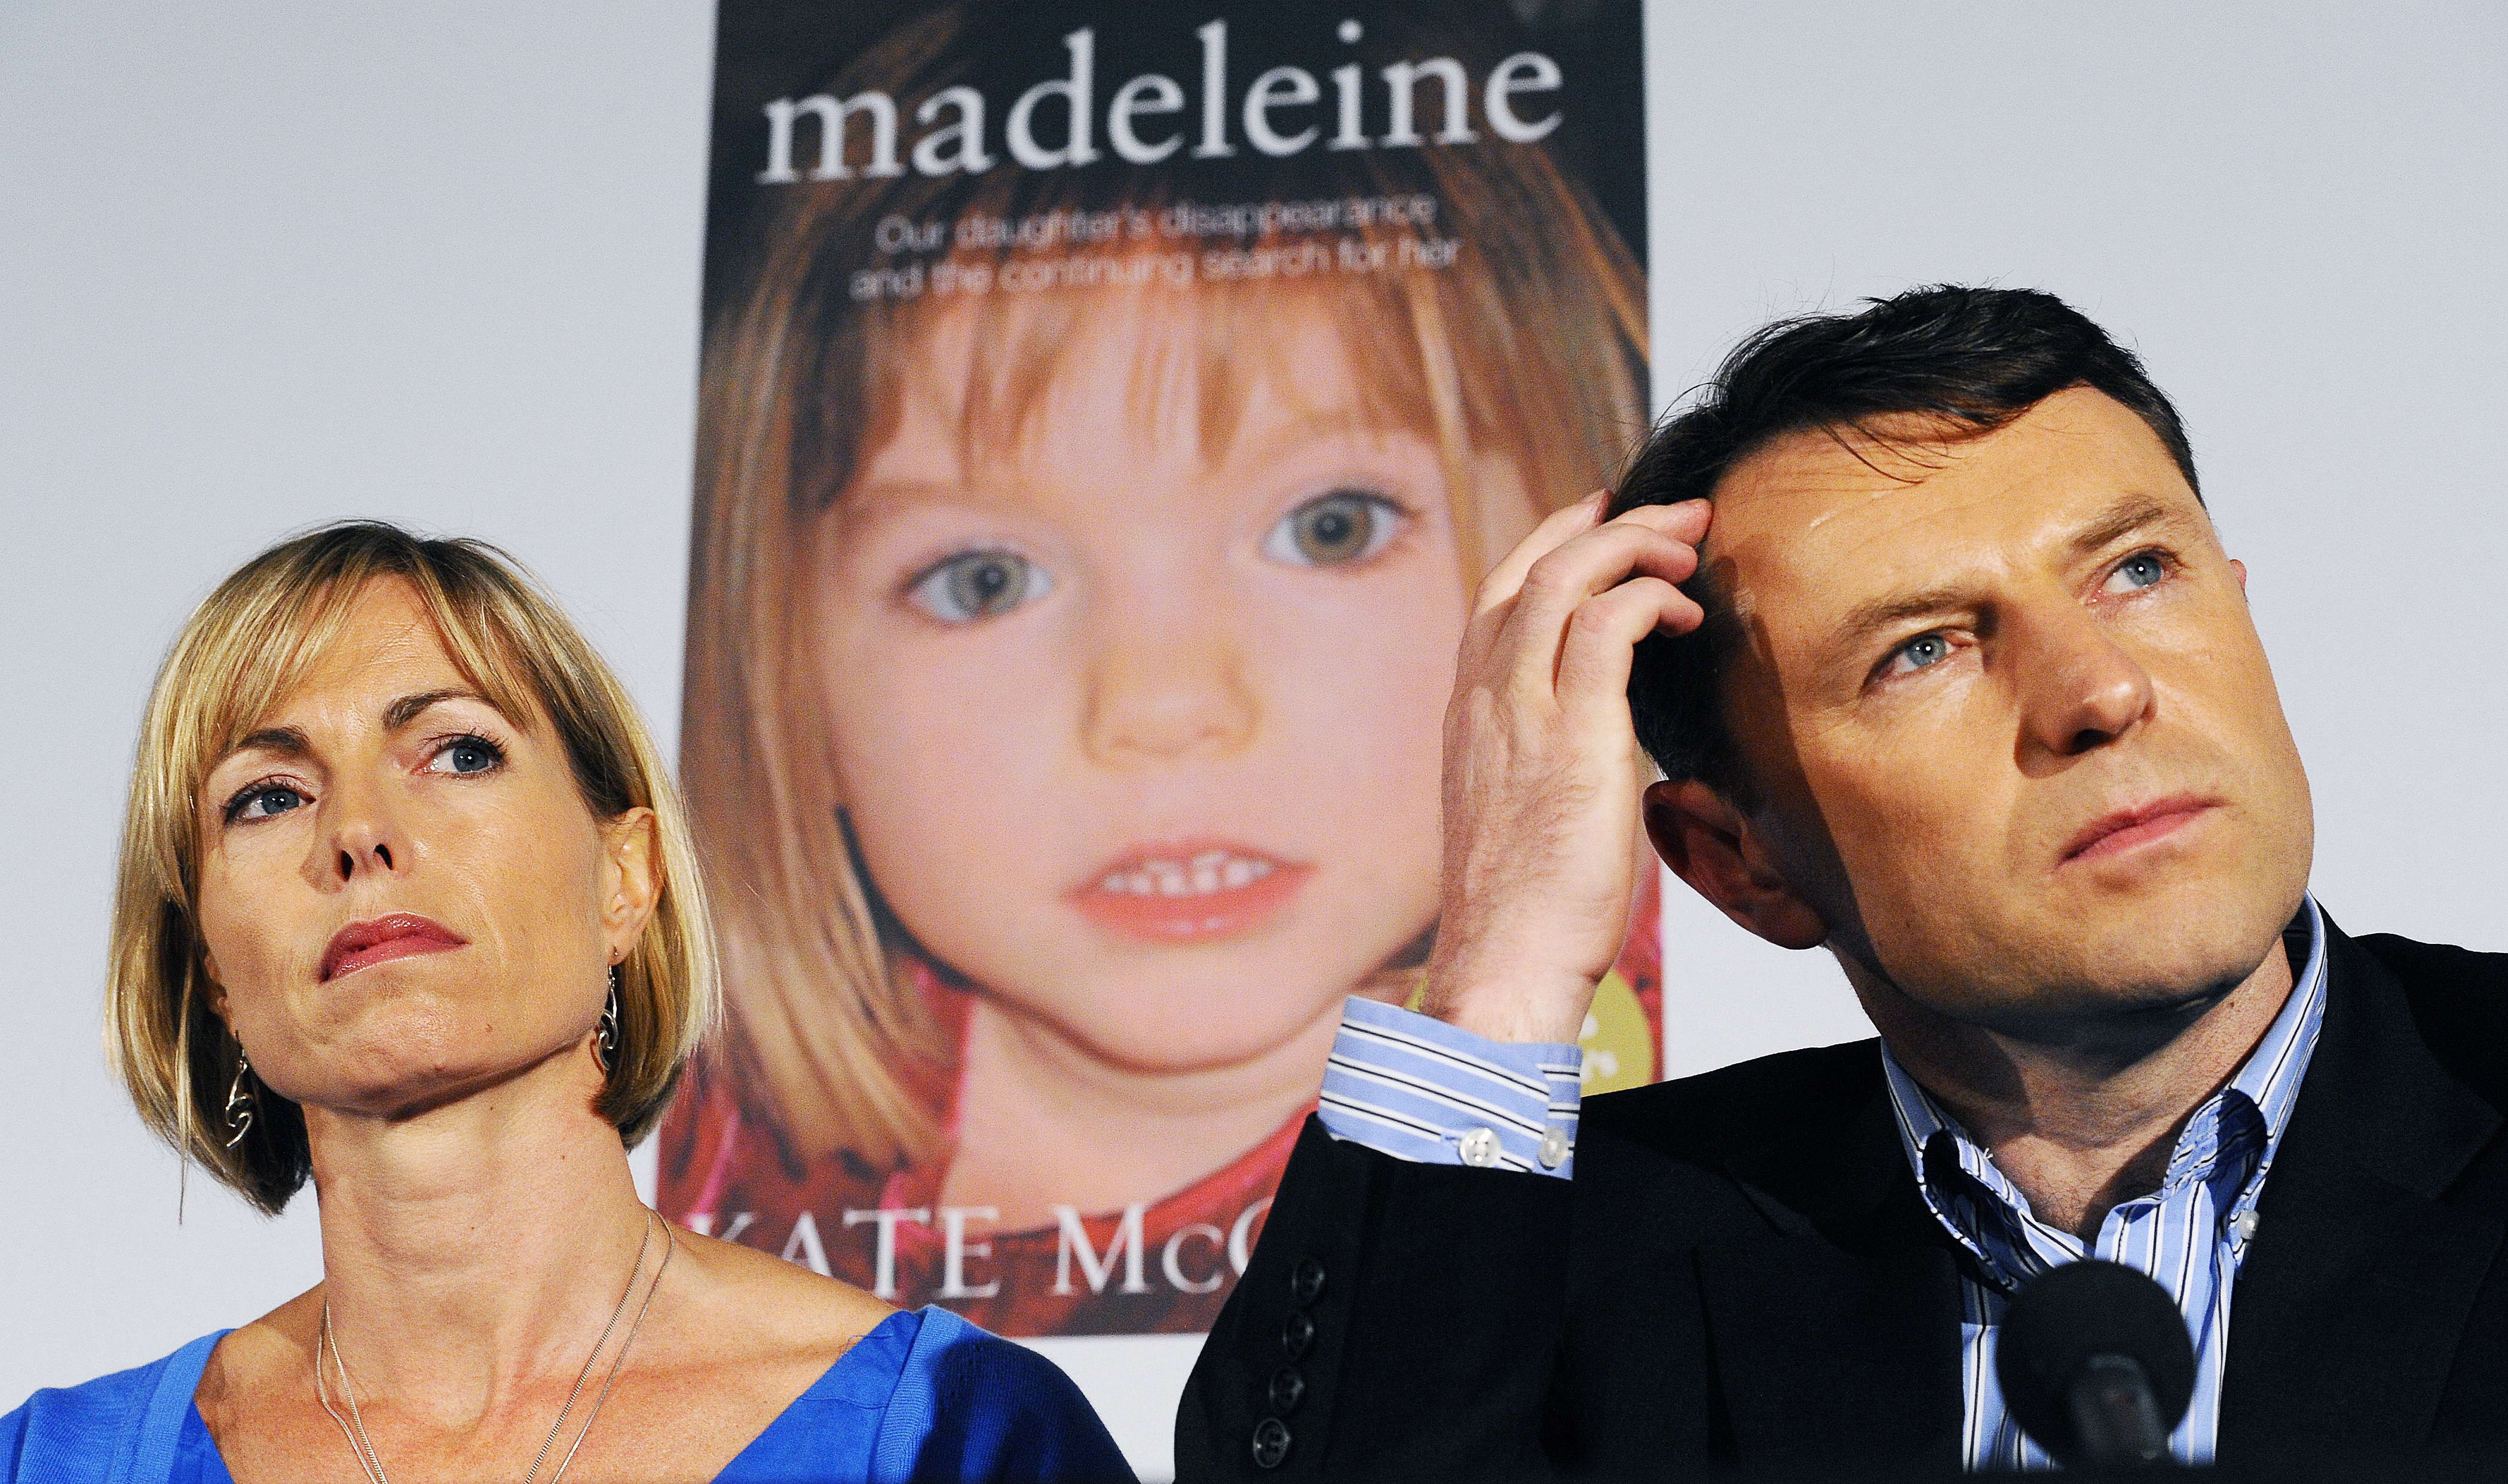 Egy német elítéltet gyanúsítanak a 13 éve eltűnt Madeleine McCann ügyében